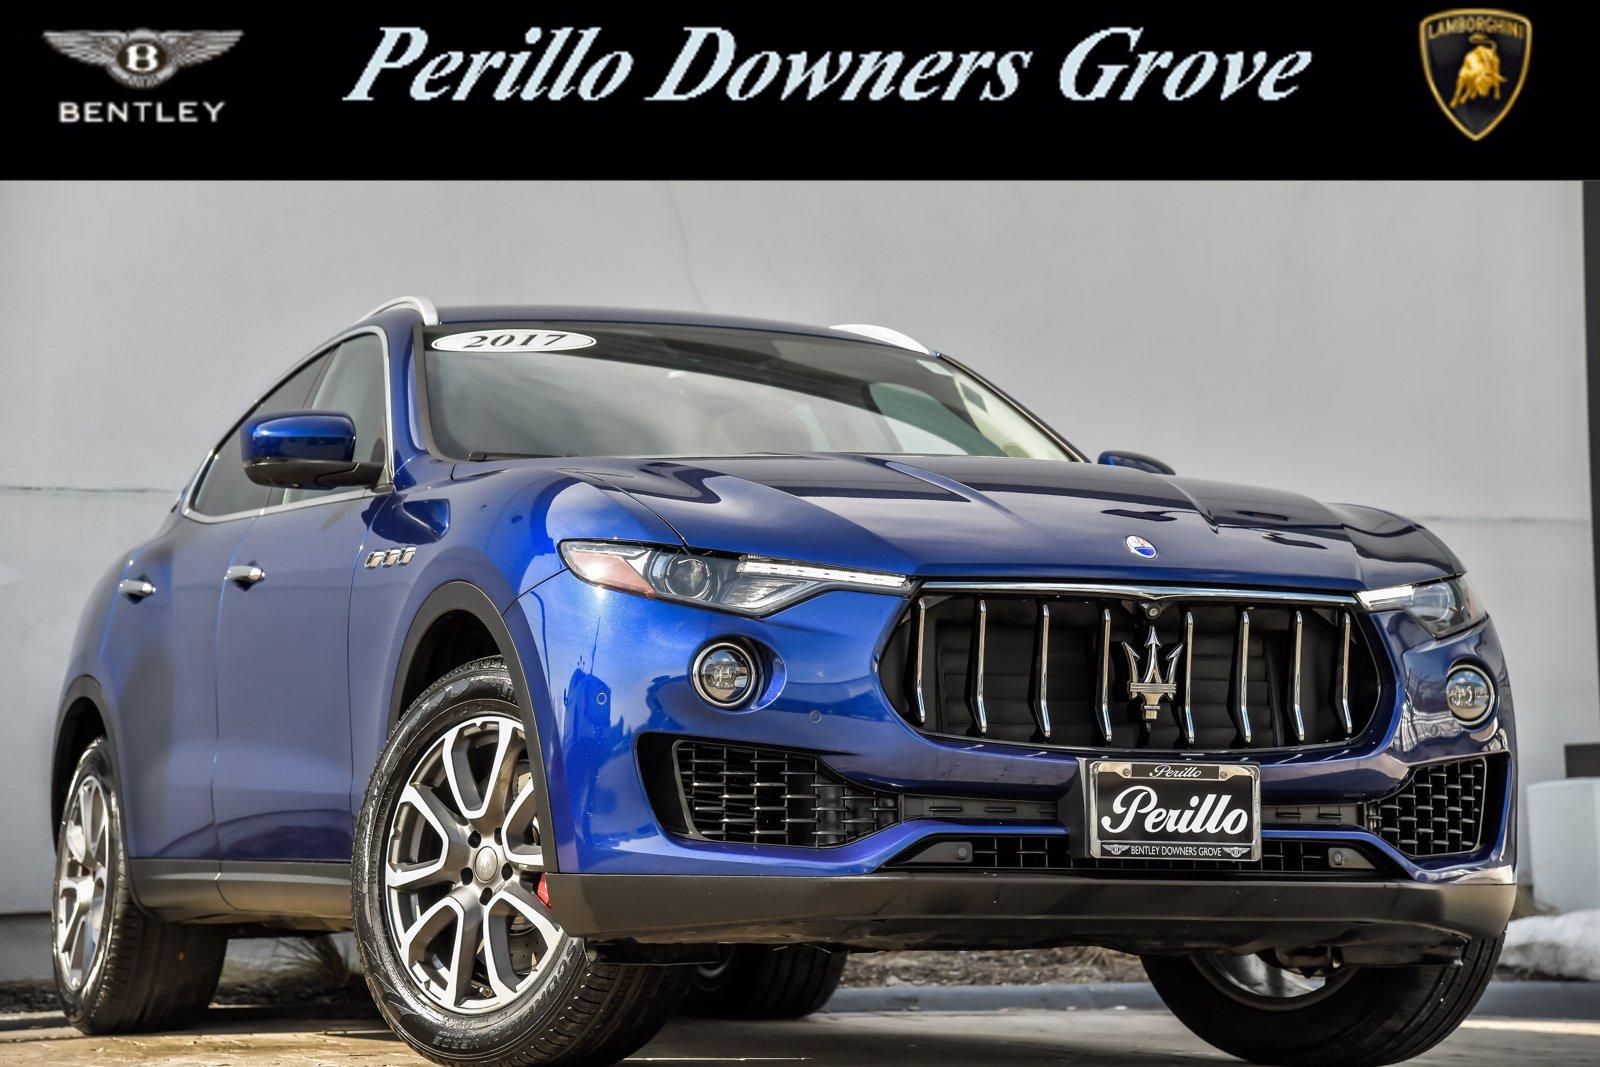 Used 2017 Maserati Levante S | Downers Grove, IL